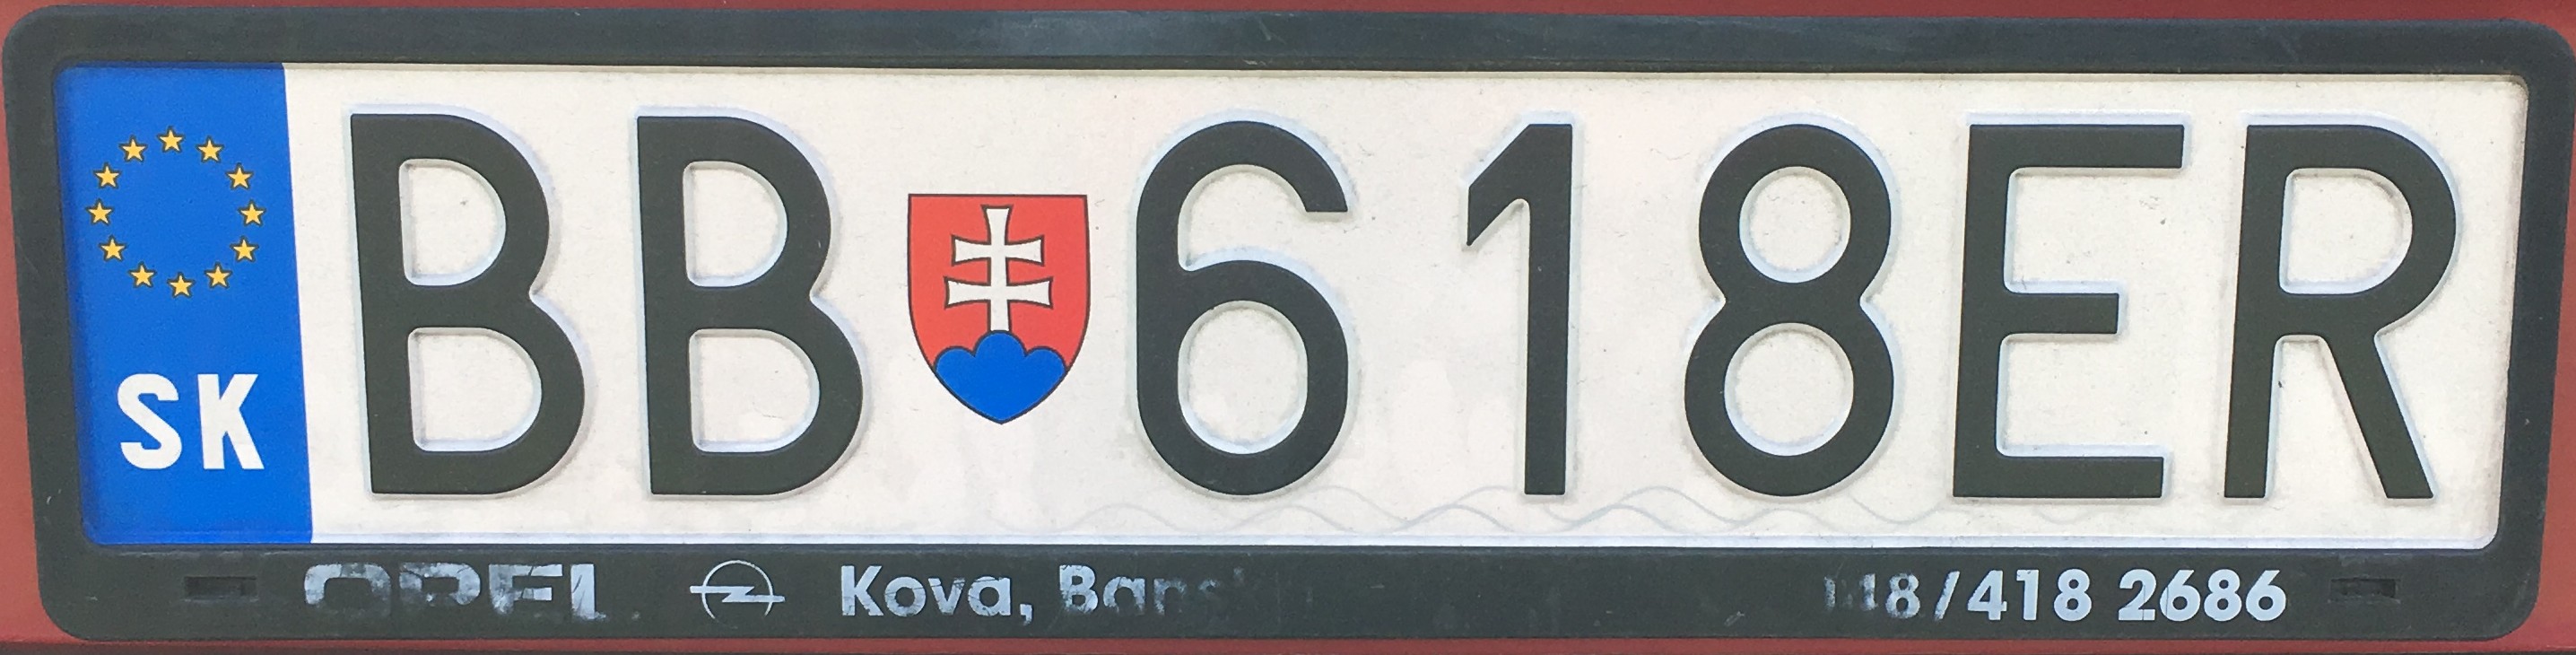 Registrační značka: BB - Banská Bystrica, foto: vlastní